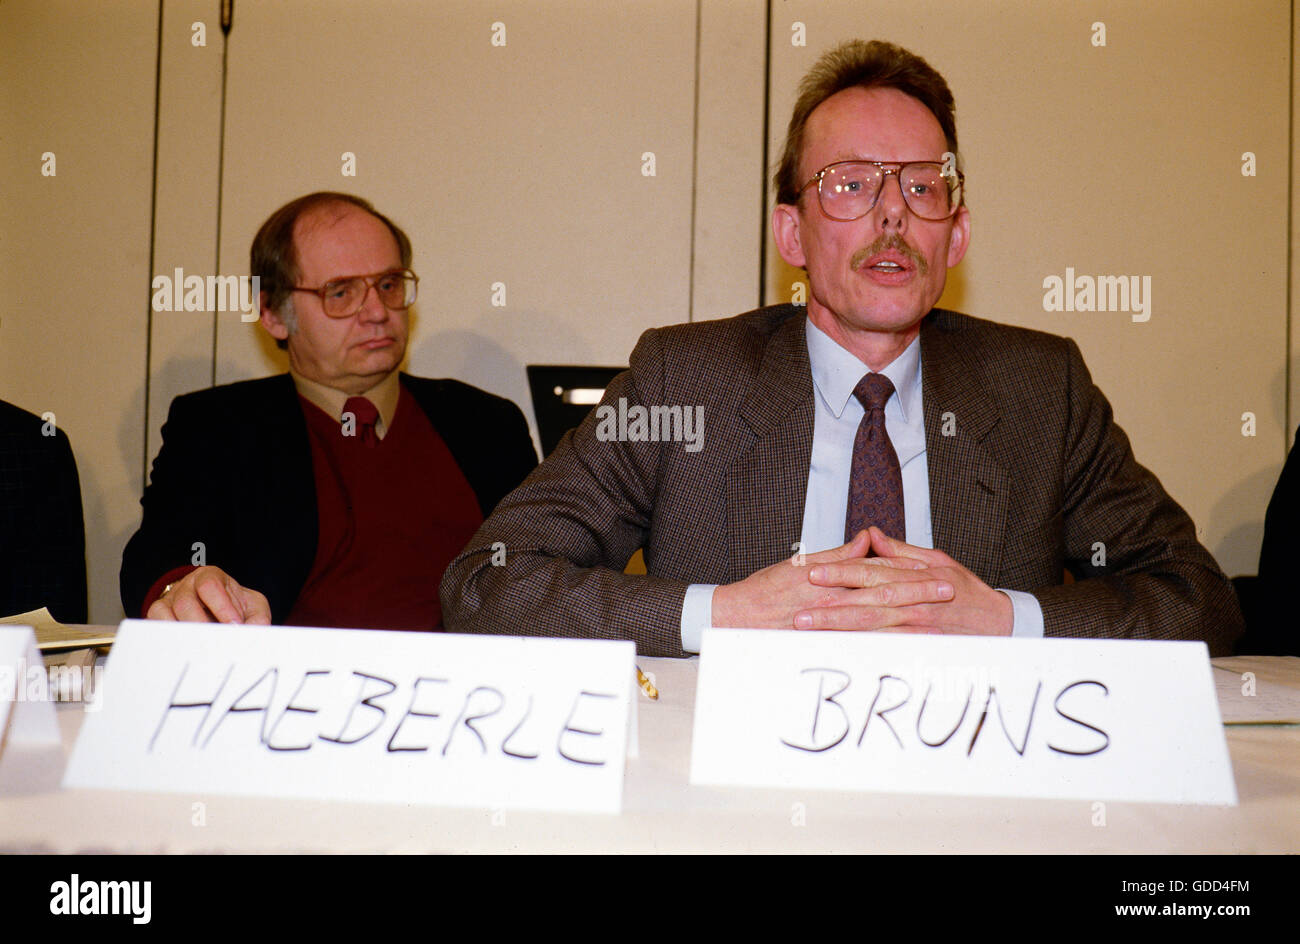 Brans, Manfred, * 1934, avocat allemand et militant gay des droits civiques, demi-longueur, avec Erwin Haeberle, lors d'une conférence de presse sur l'acte de lutte contre le SIDA du gouvernement bavarois, Munich, 5.3.1987, Banque D'Images